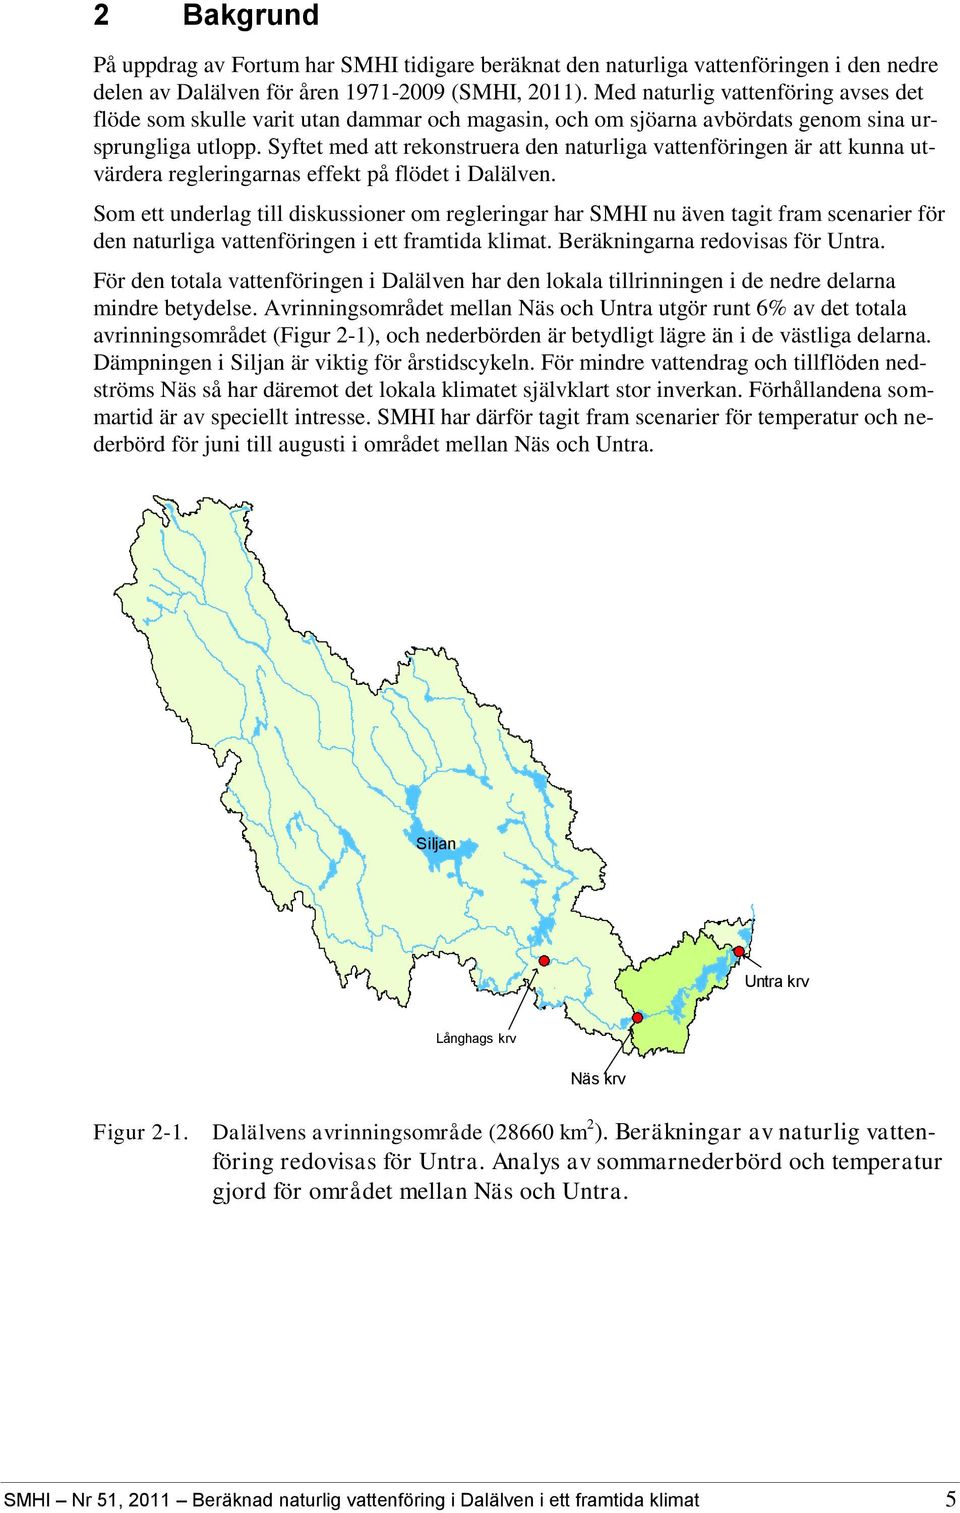 Syftet med att rekonstruera den naturliga vattenföringen är att kunna utvärdera regleringarnas effekt på flödet i Dalälven.